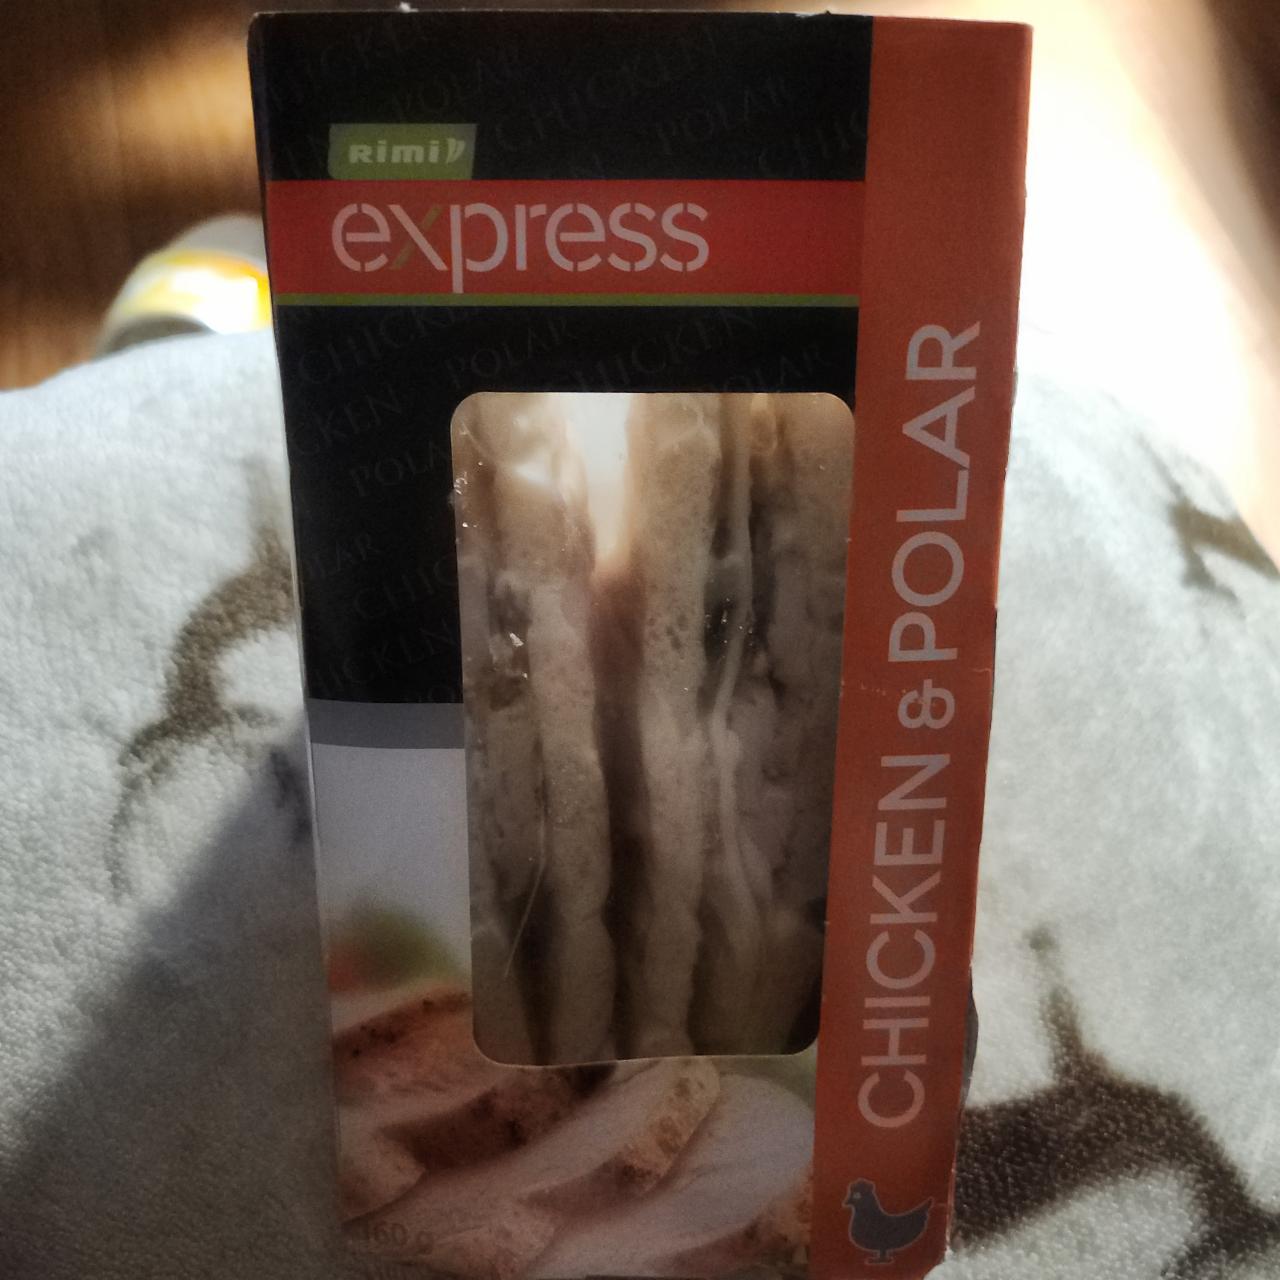 Фото - Бутерброды треугольники express с курицей и полярным хлебом Rimi